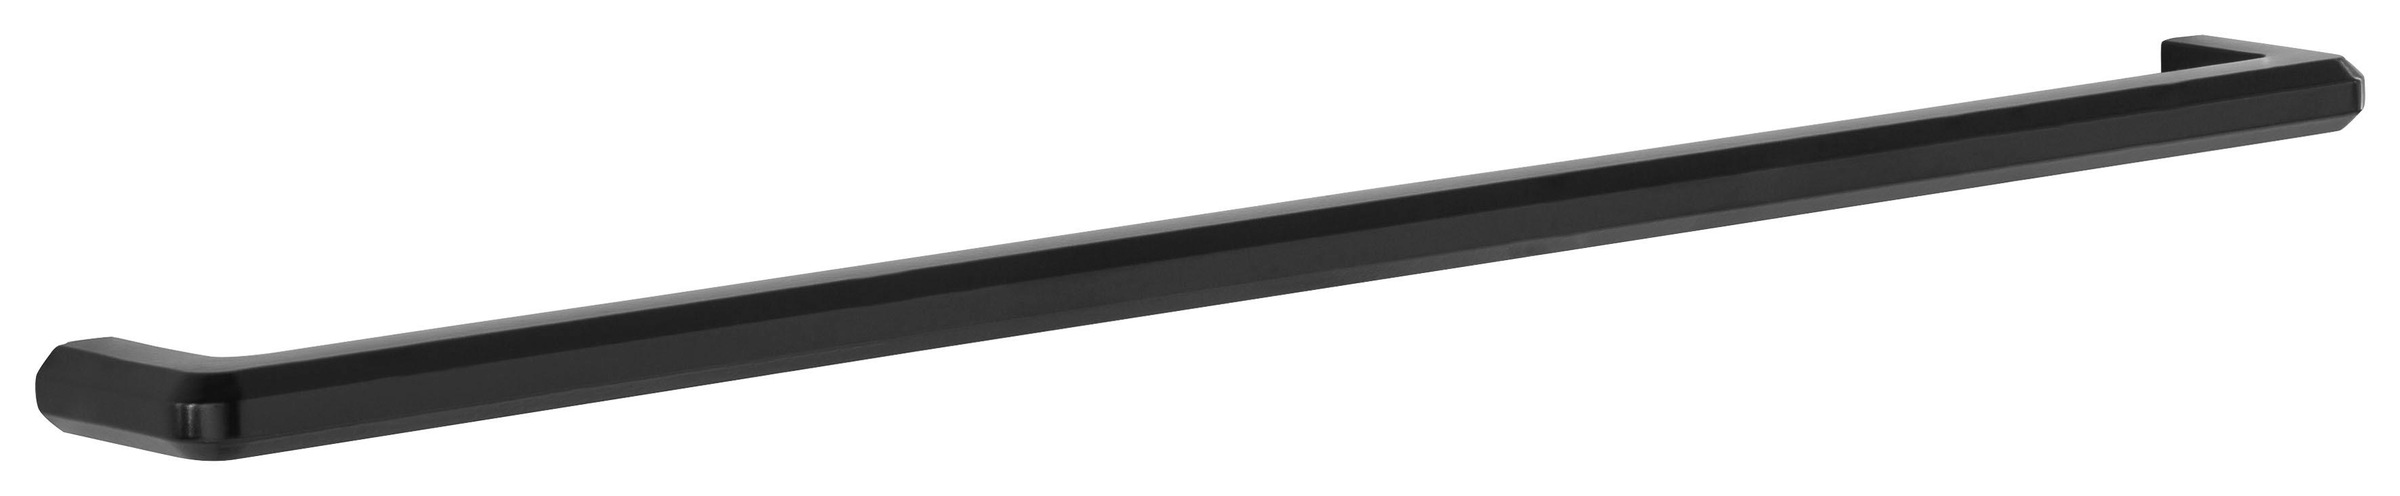 HELD MÖBEL Eckunterschrank »Tulsa«, 110 cm breit, 1 Tür, schwarzer Metallgriff, hochwertige MDF Front